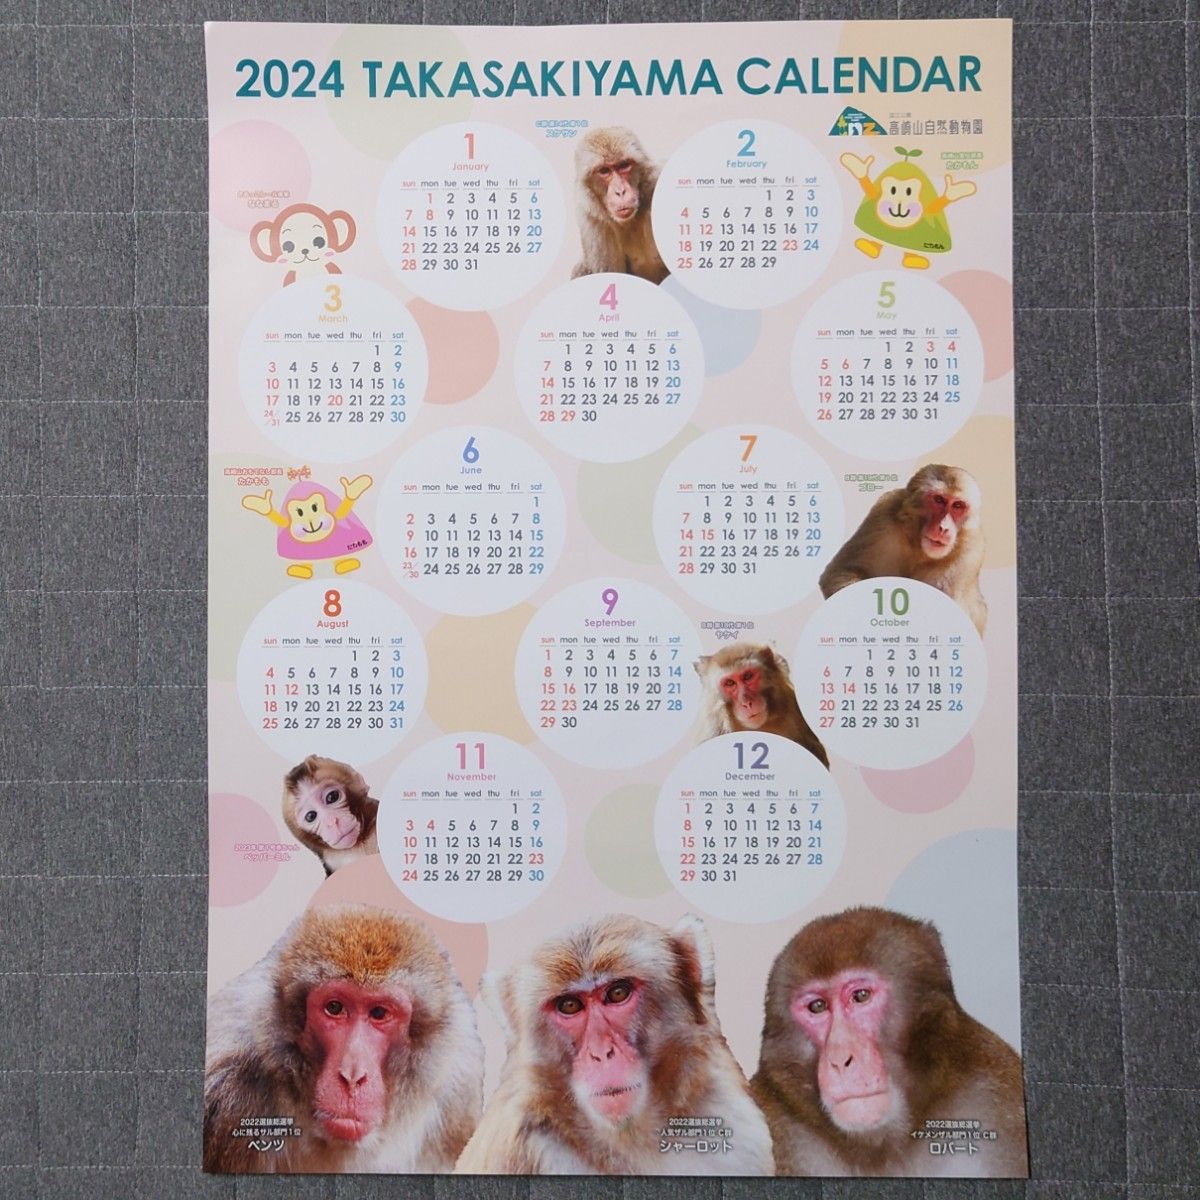 2024 高崎山 カレンダー ポスタータイプ 【筒状発送】 2枚